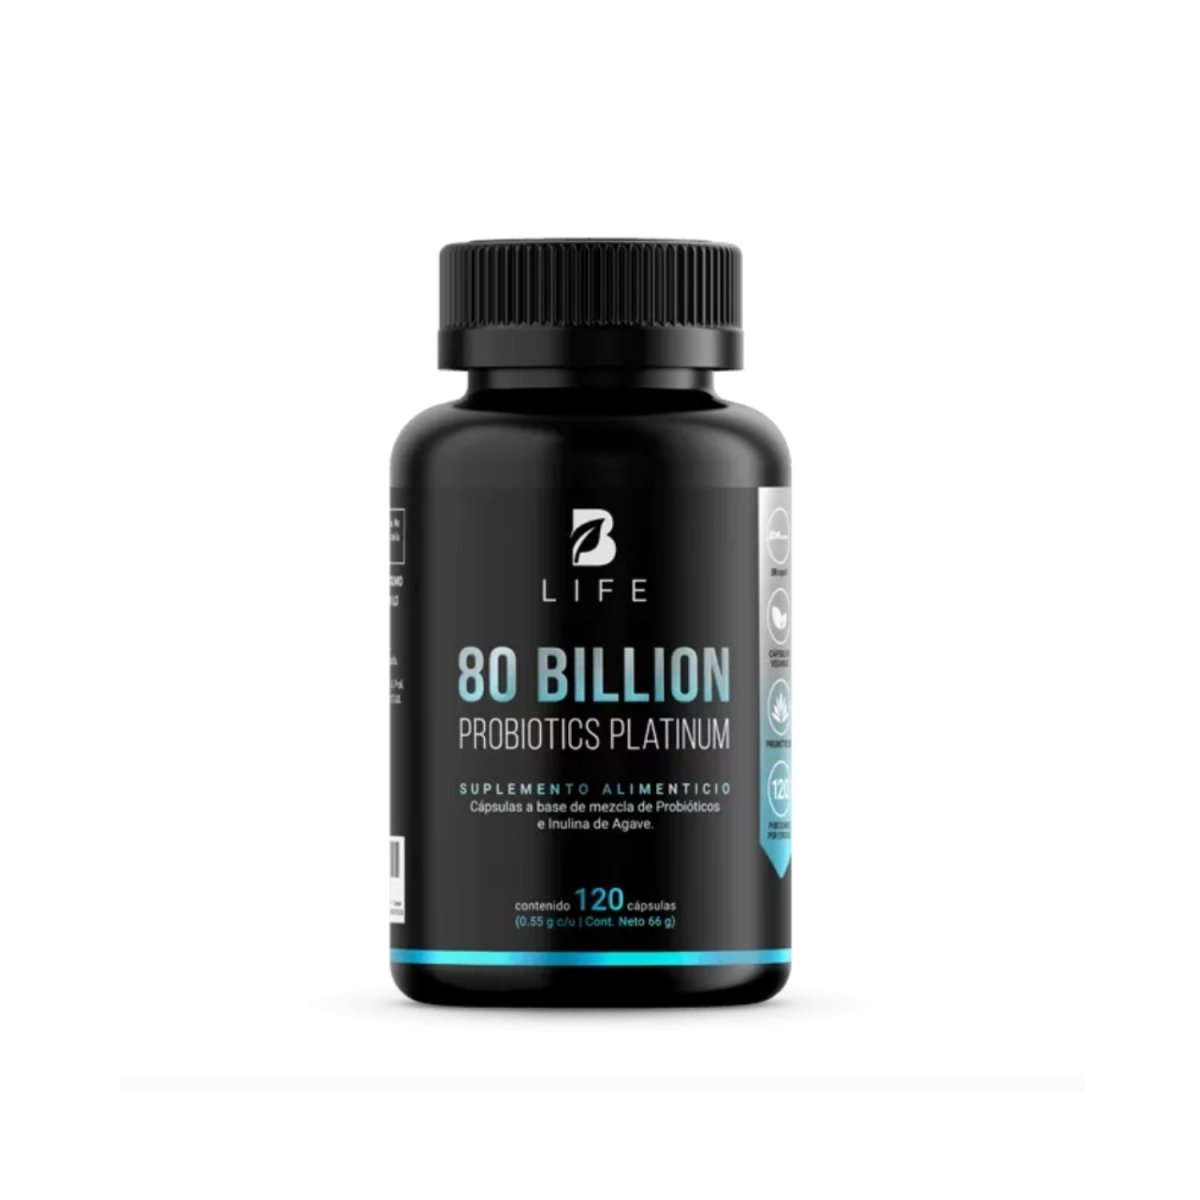 80 Billion probiotics platinum - Good Express mx